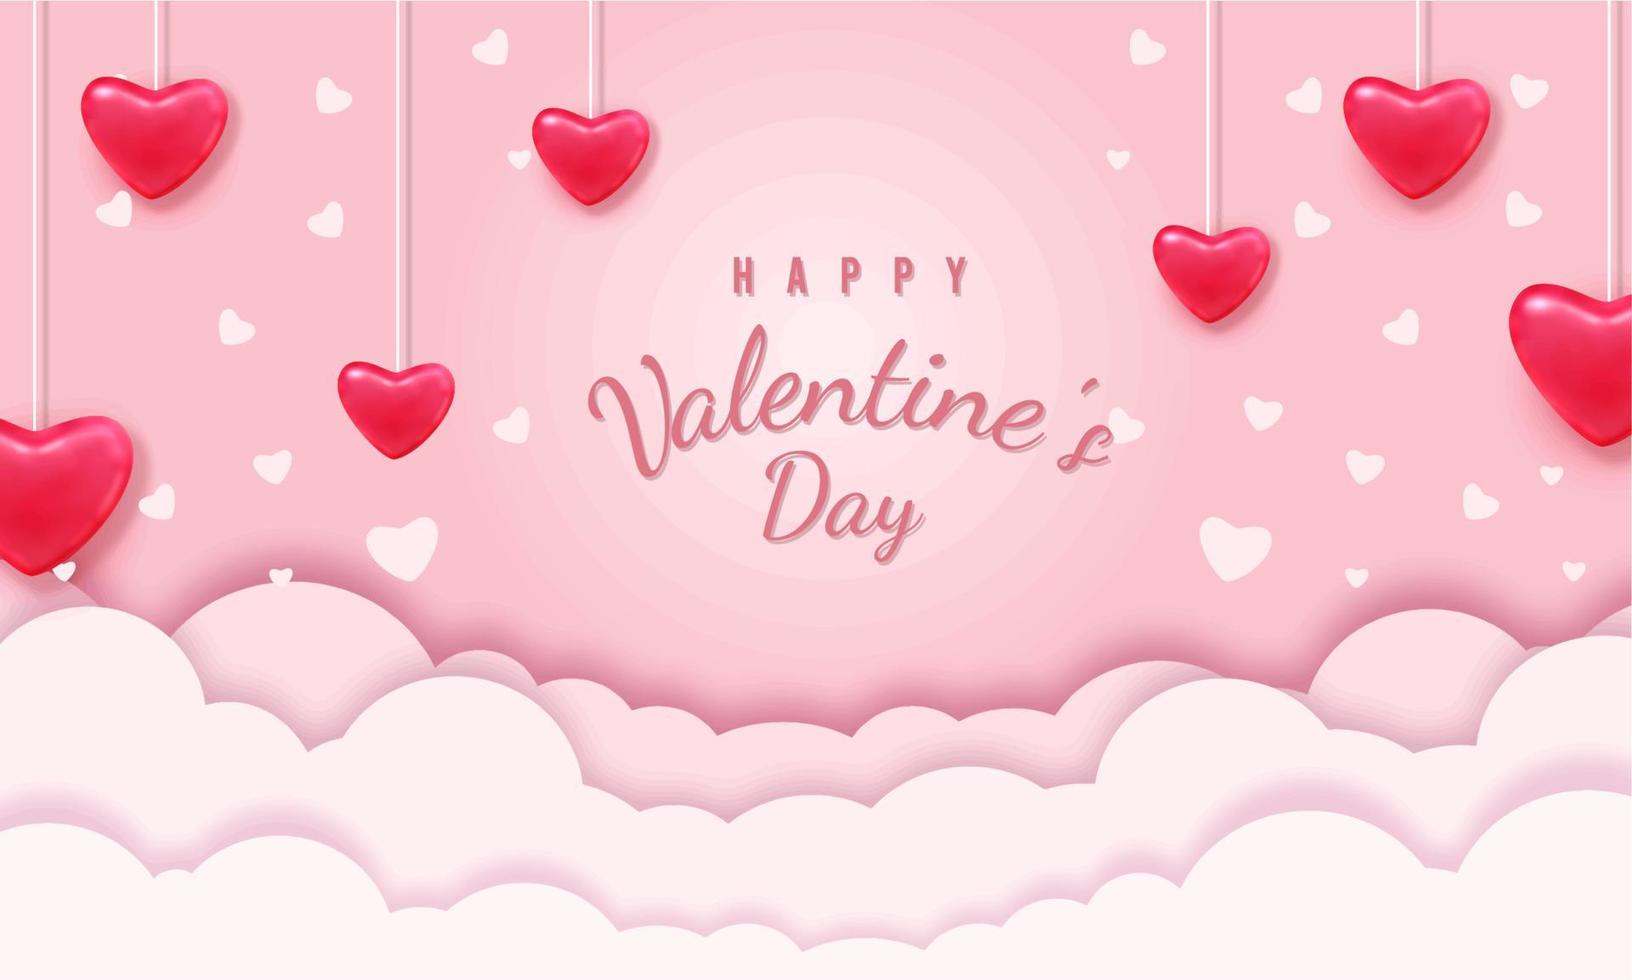 gelukkig Valentijnsdag dag blanco achtergrond, mooi papier besnoeiing wolken met 3d rood harten Aan roze achtergrond. vector illustratie. papercut stijl. plaats voor tekst